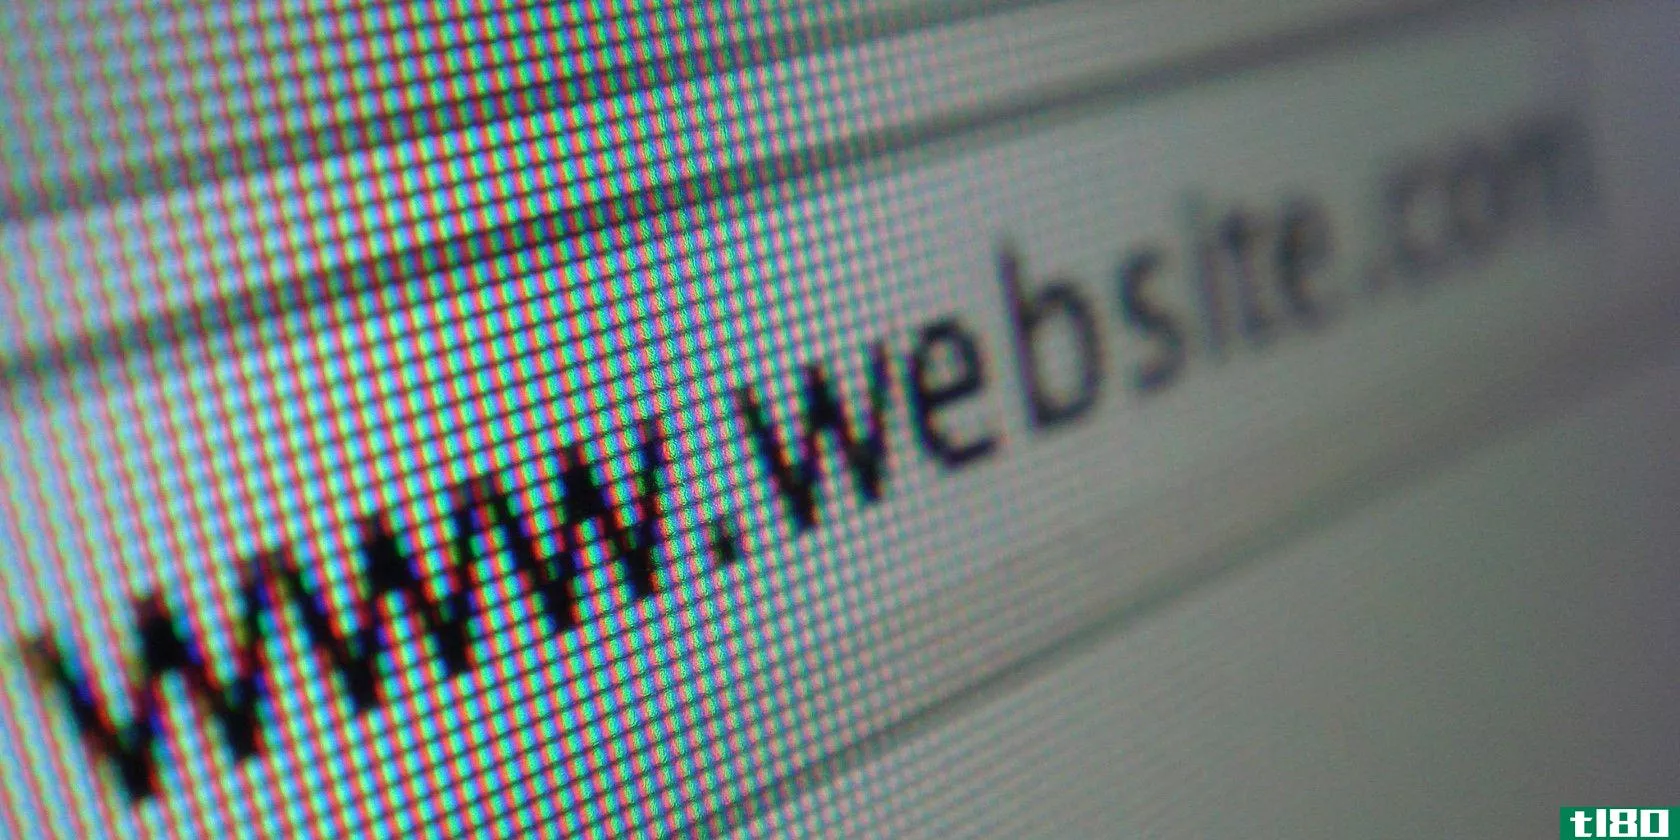 A closeup of an example website URL